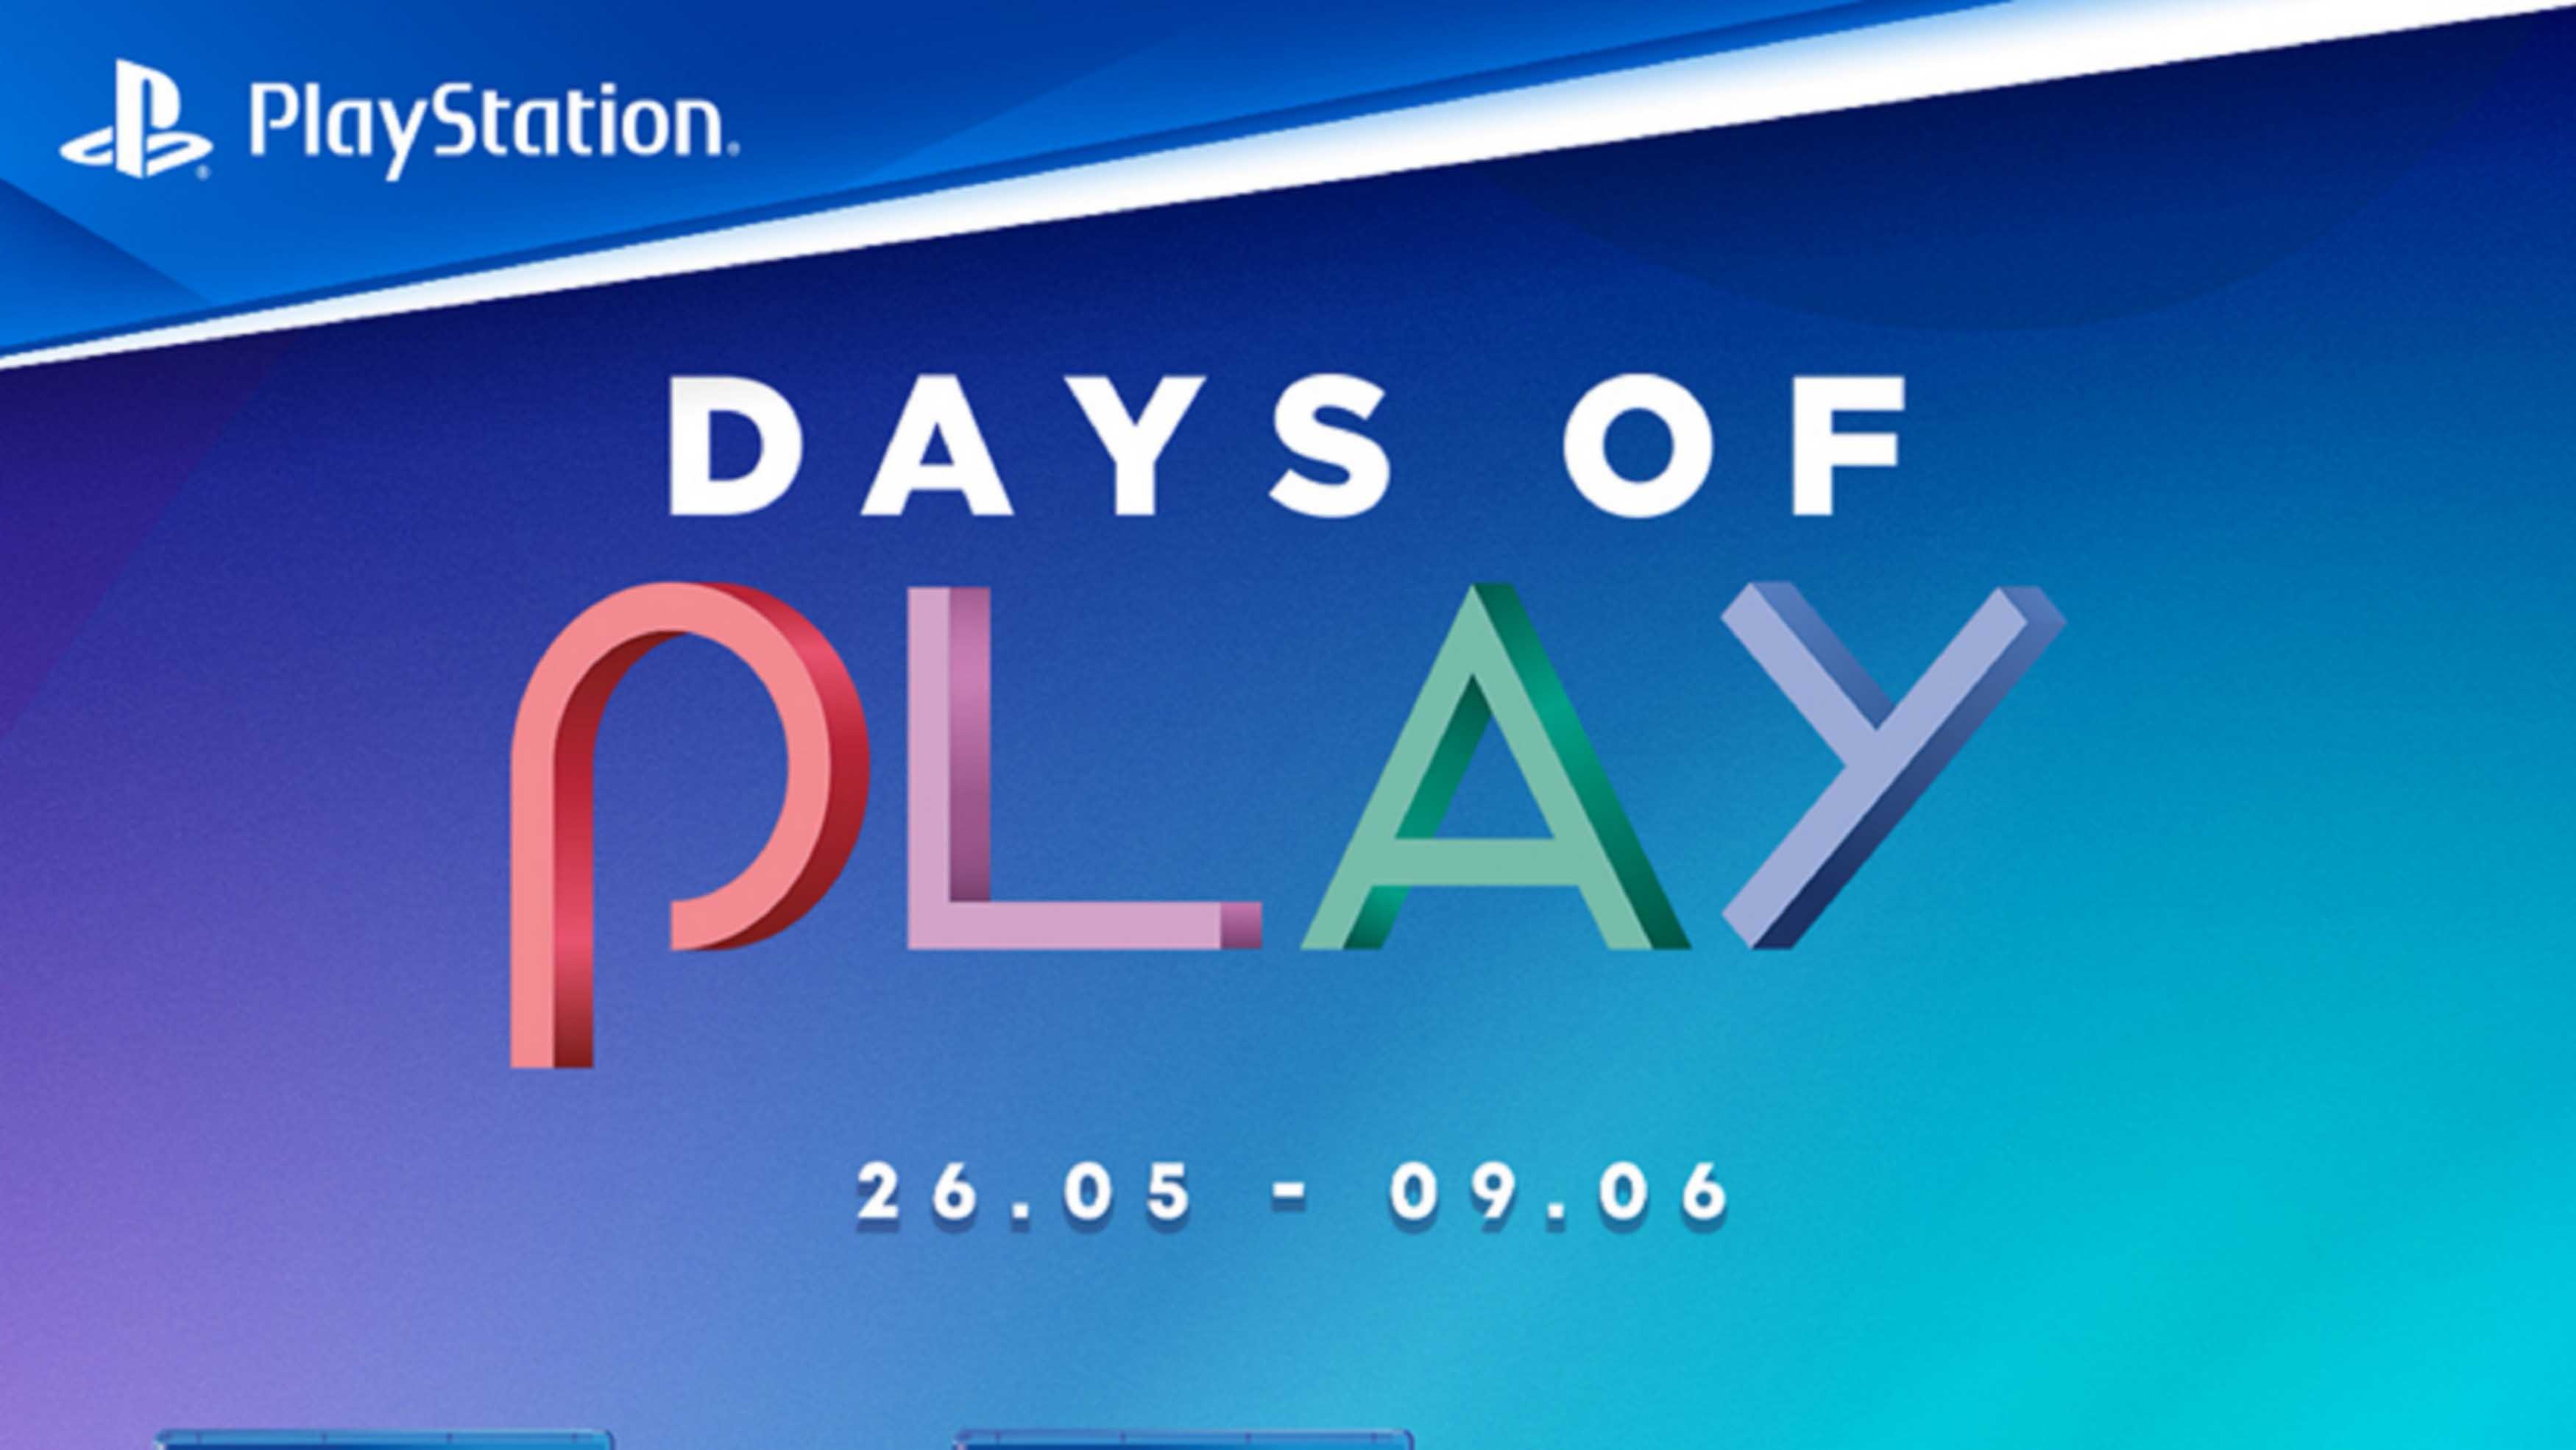 【優惠】PlayStation全球優惠活動 限時15天大折扣